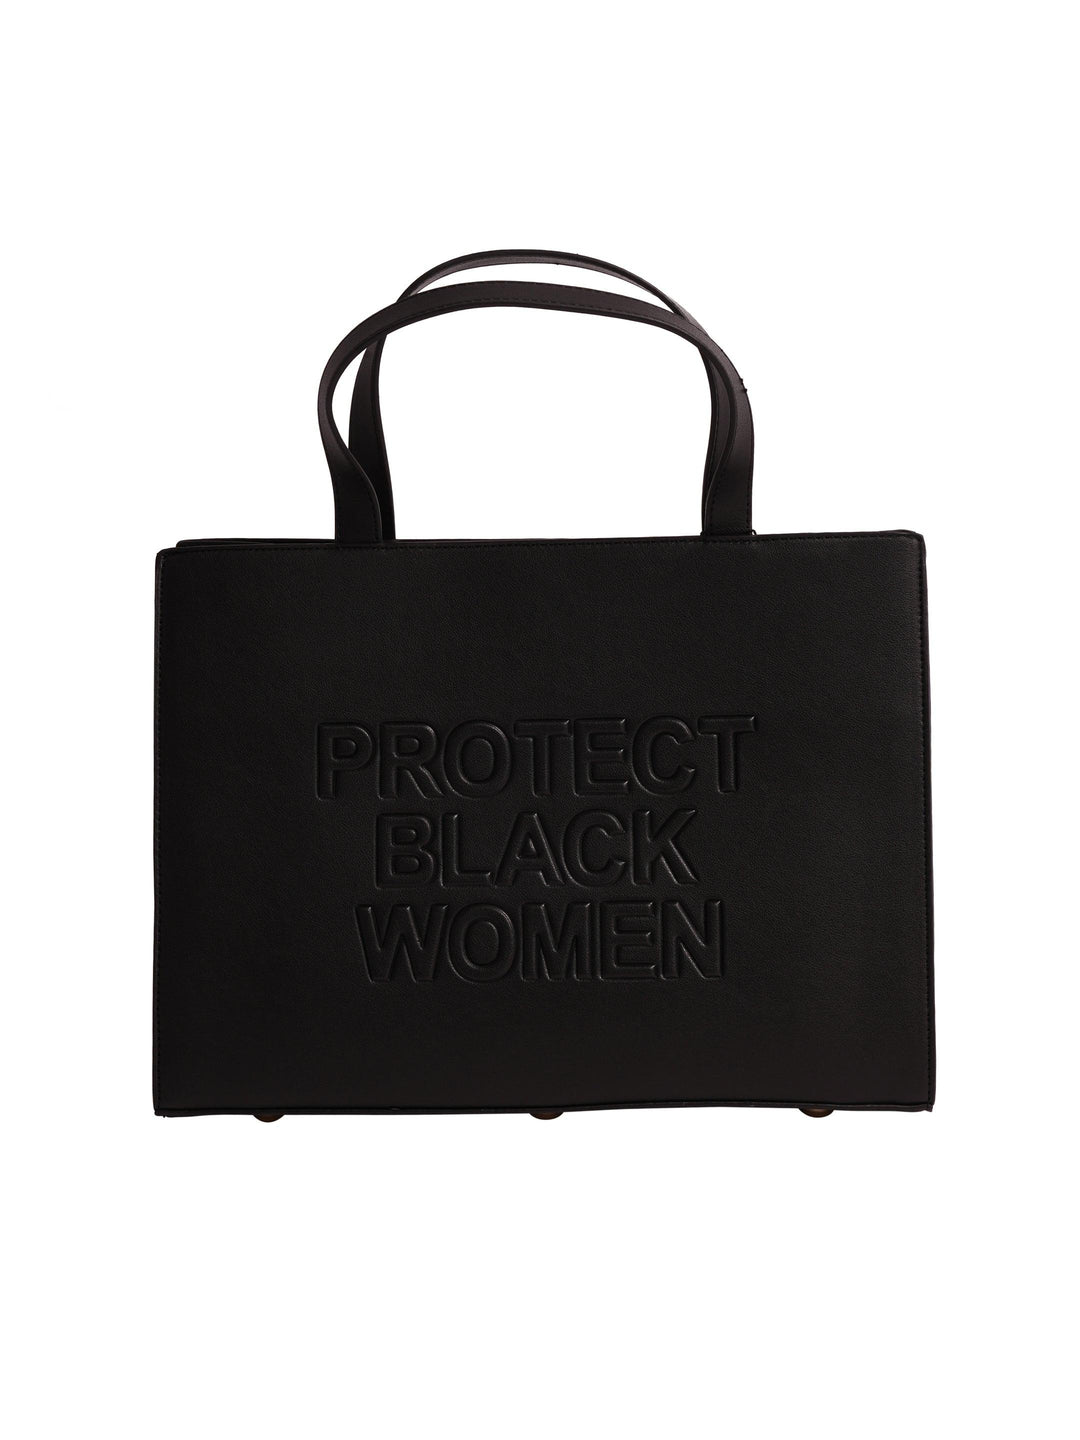 Protect Black Women Mini Bag- Vegan Black